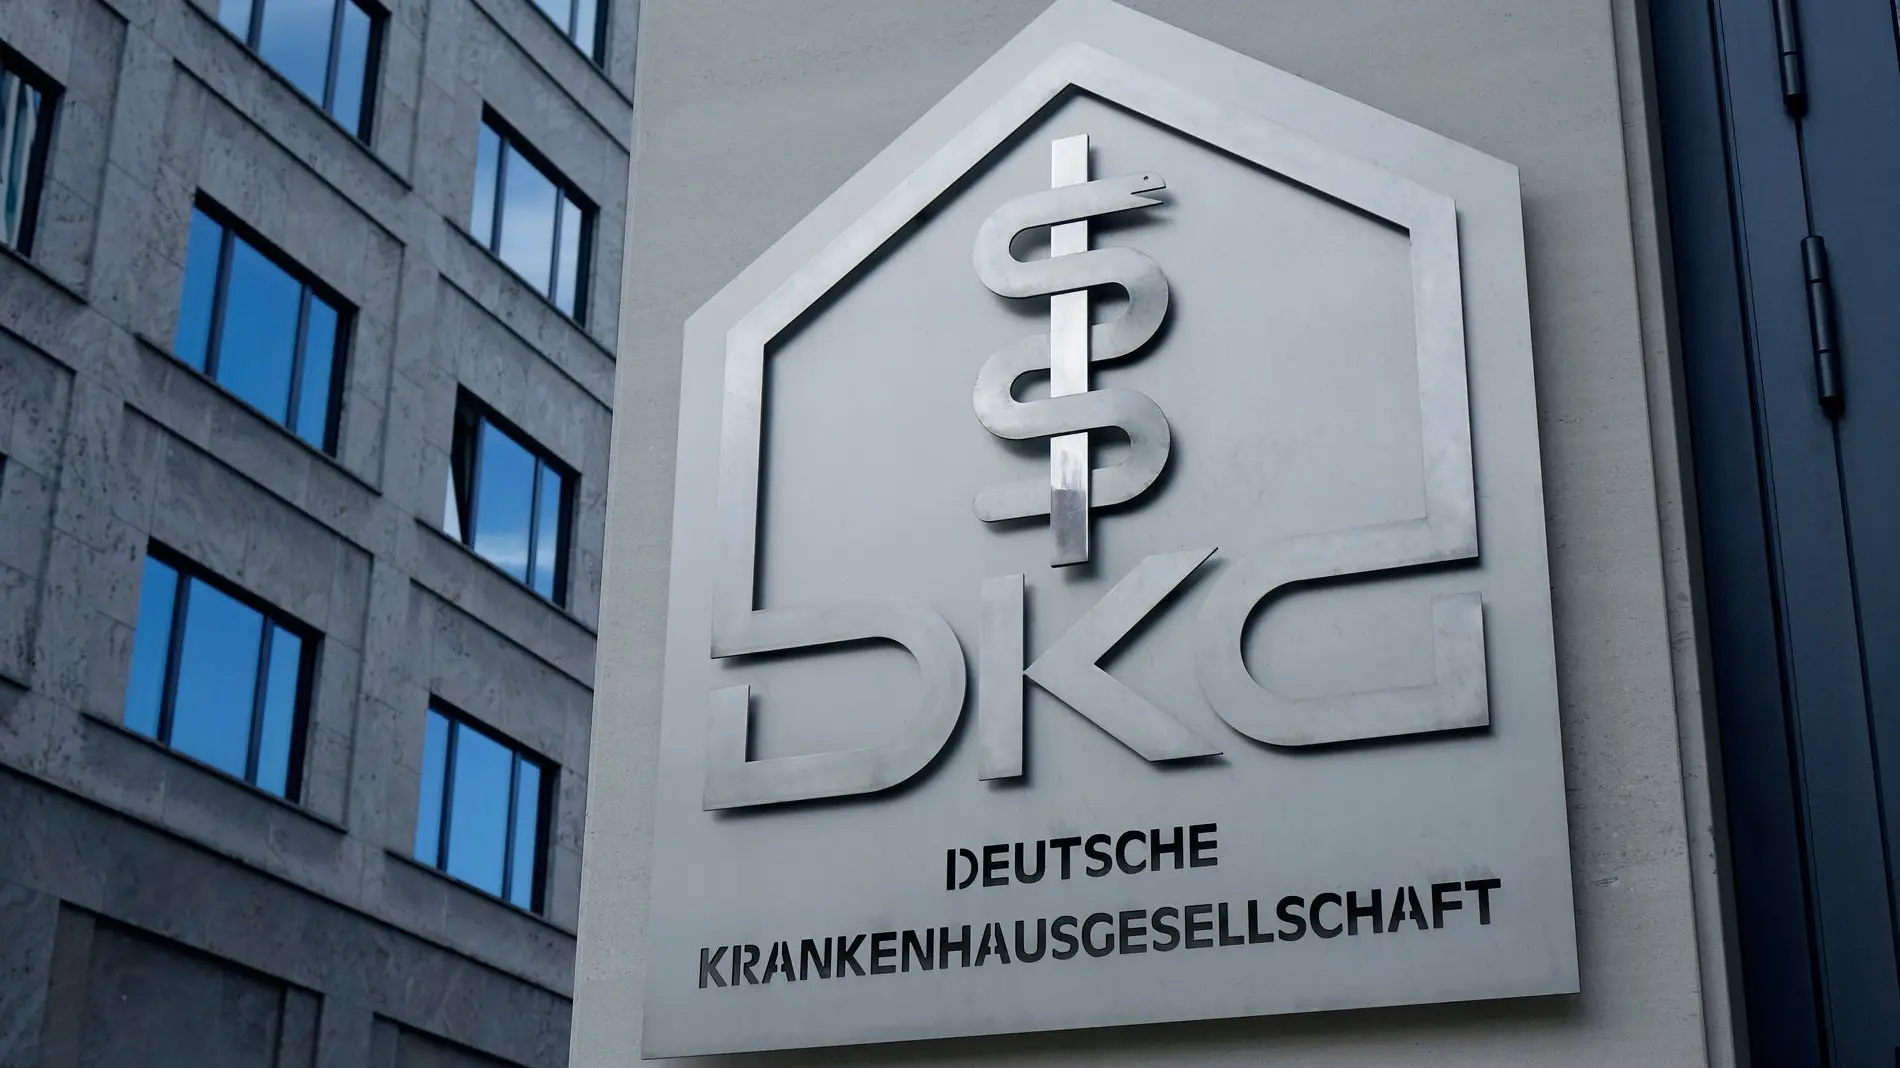 Das Bild zeigt ein Schild der Deutschen Krankenhausgesellschaft.